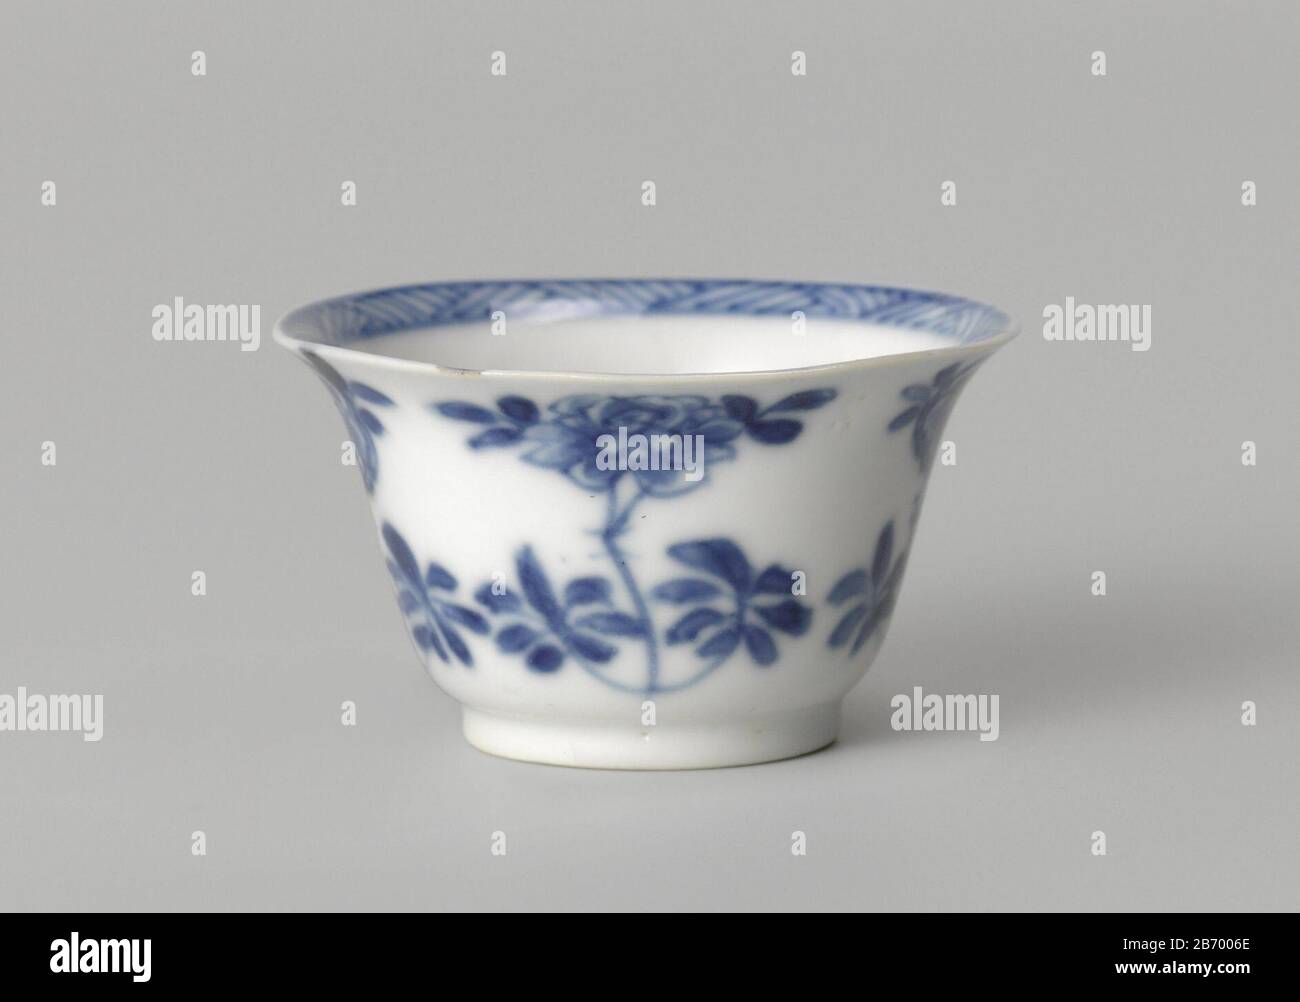 Klokvormige kop conoció a Bloemtakken Klokvormige kop van porselein, beschilderd in onderglazuur blauw. Op de buitenwand bloemtakken (pioen, prunus). Op de bodem een bloemtak en de binnenrand met arceerwerk. Blauw-Wit. Fabricante : pottenbakker: AnoniemPlaats fabrique: China Dating: CA. 1700 - ca. 1724Escuela / stijl: Qing-dynastie (1644-1912) / Kangxi-periode (1662-1722) / Yongzheng-periode (1723-1735) kamerken Físico: Porselein met onderglazuur blauw material: Porselglazuur kobalt Techniek: Draaiend bewerken / Rilderein / 4,2 cm Dimensiones. Foto de stock